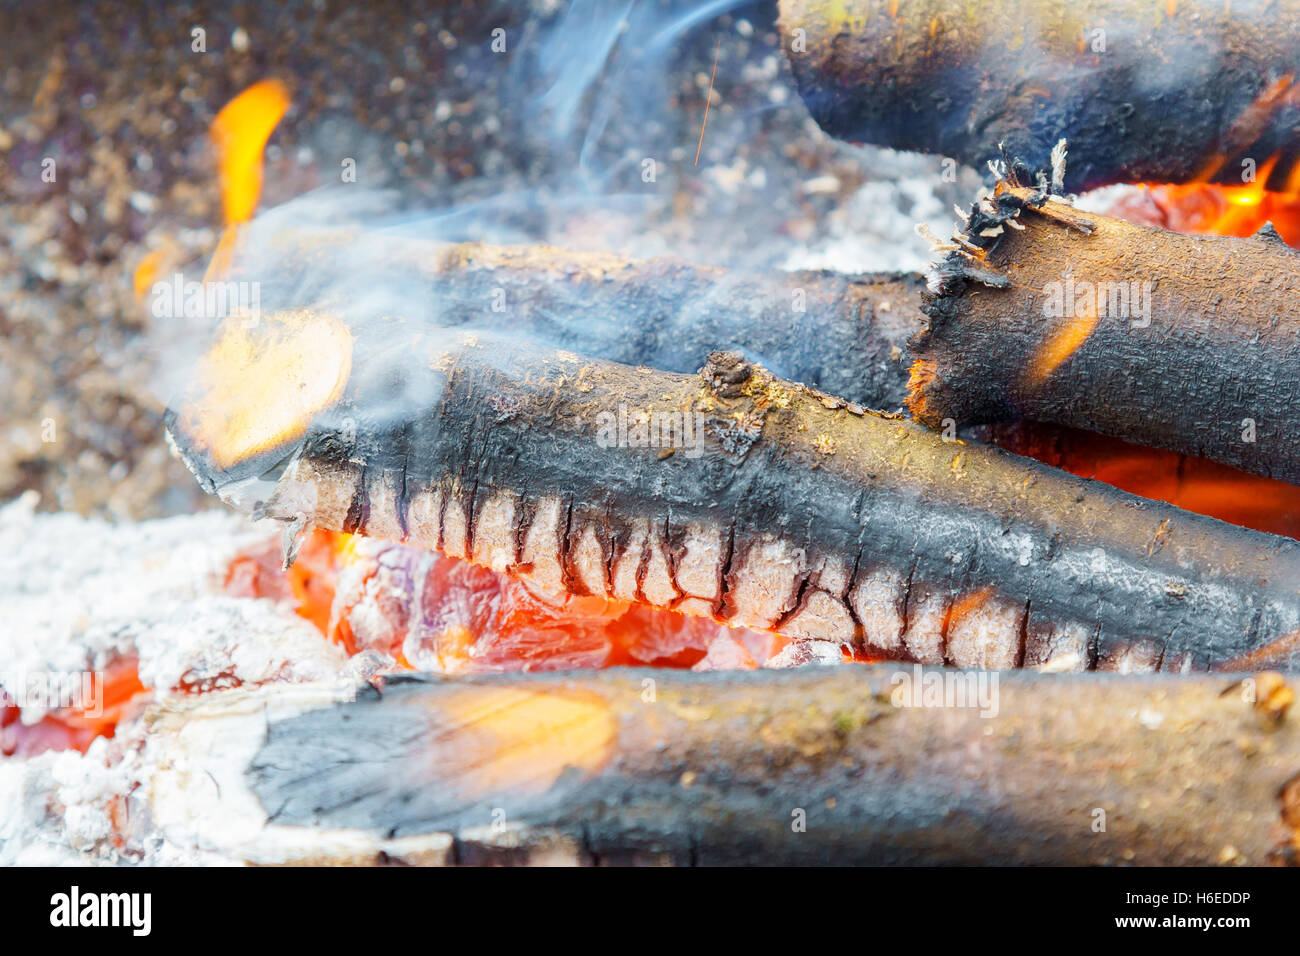 La gravure dans la fire board. Feu de joie avec les flammes, la fumée, des planches et des braises de charbon. Photo close-up avec une mise au point sélective Banque D'Images